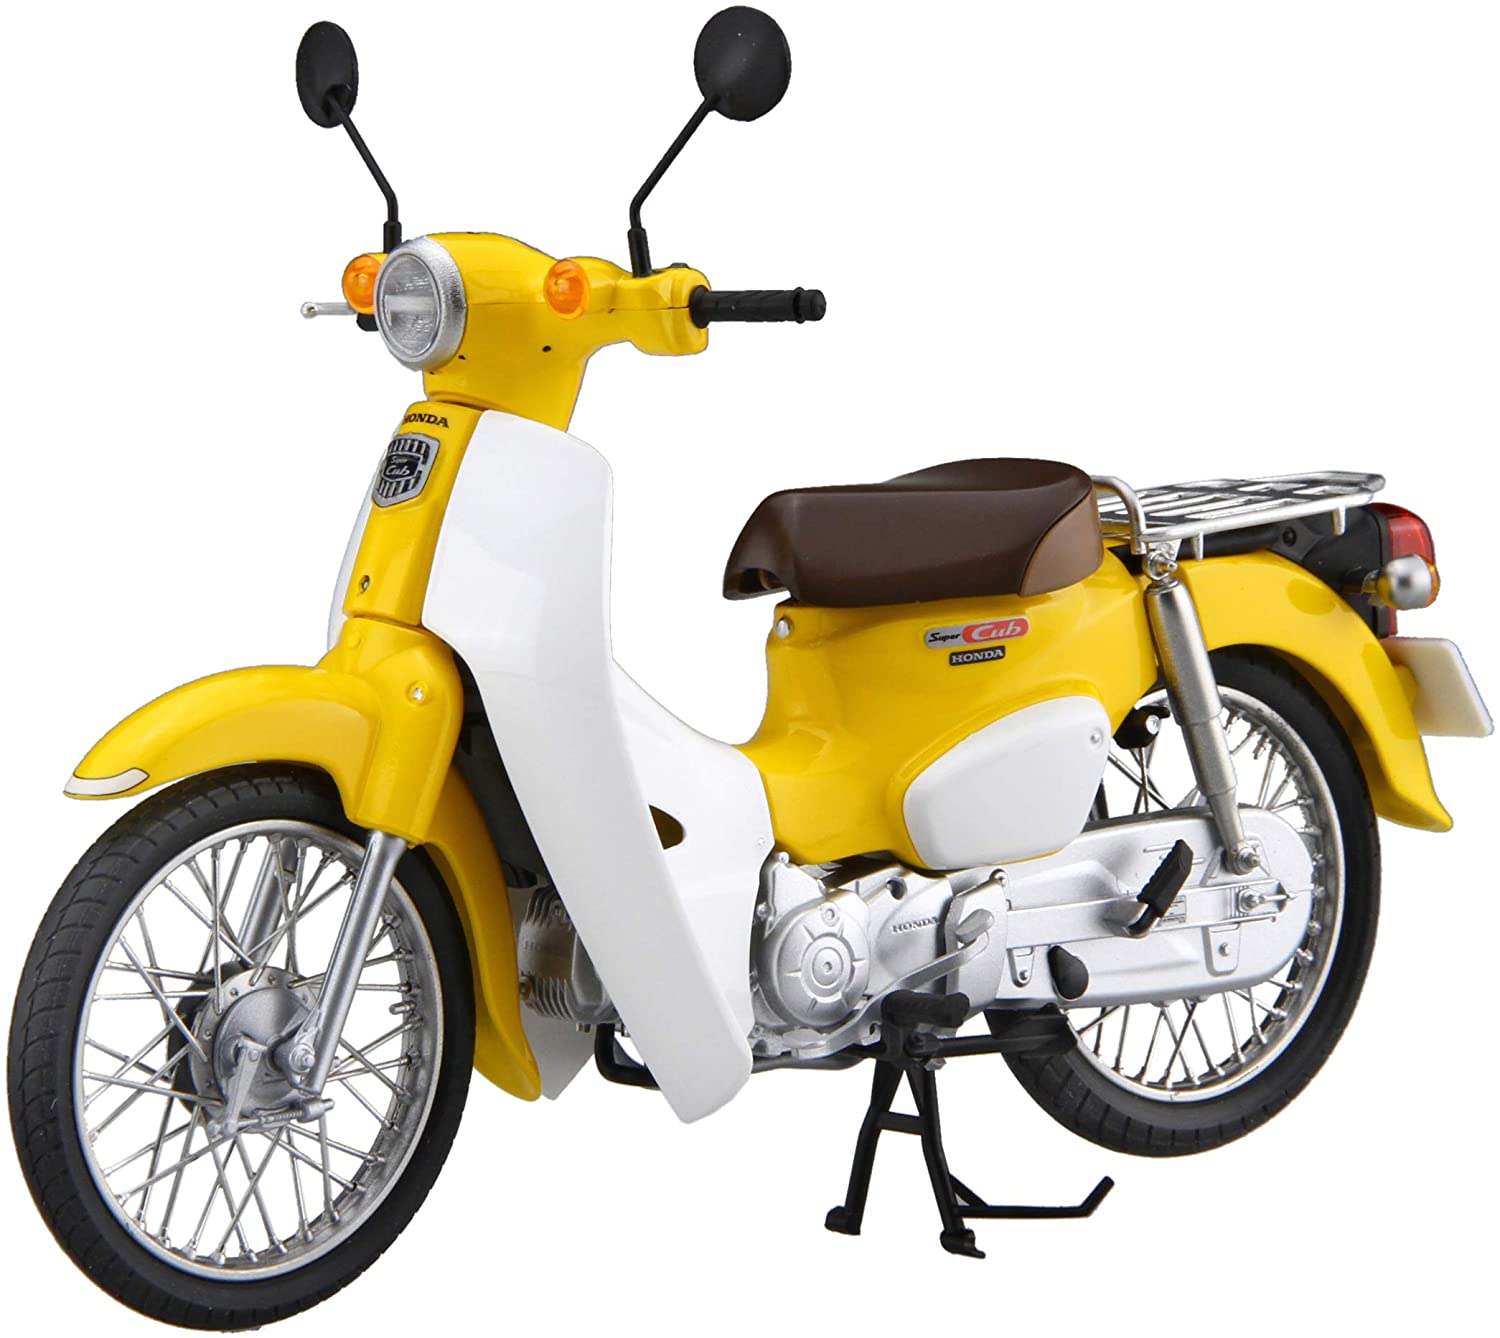 Honda Super Cub110 (Pearl Flash Yellow)